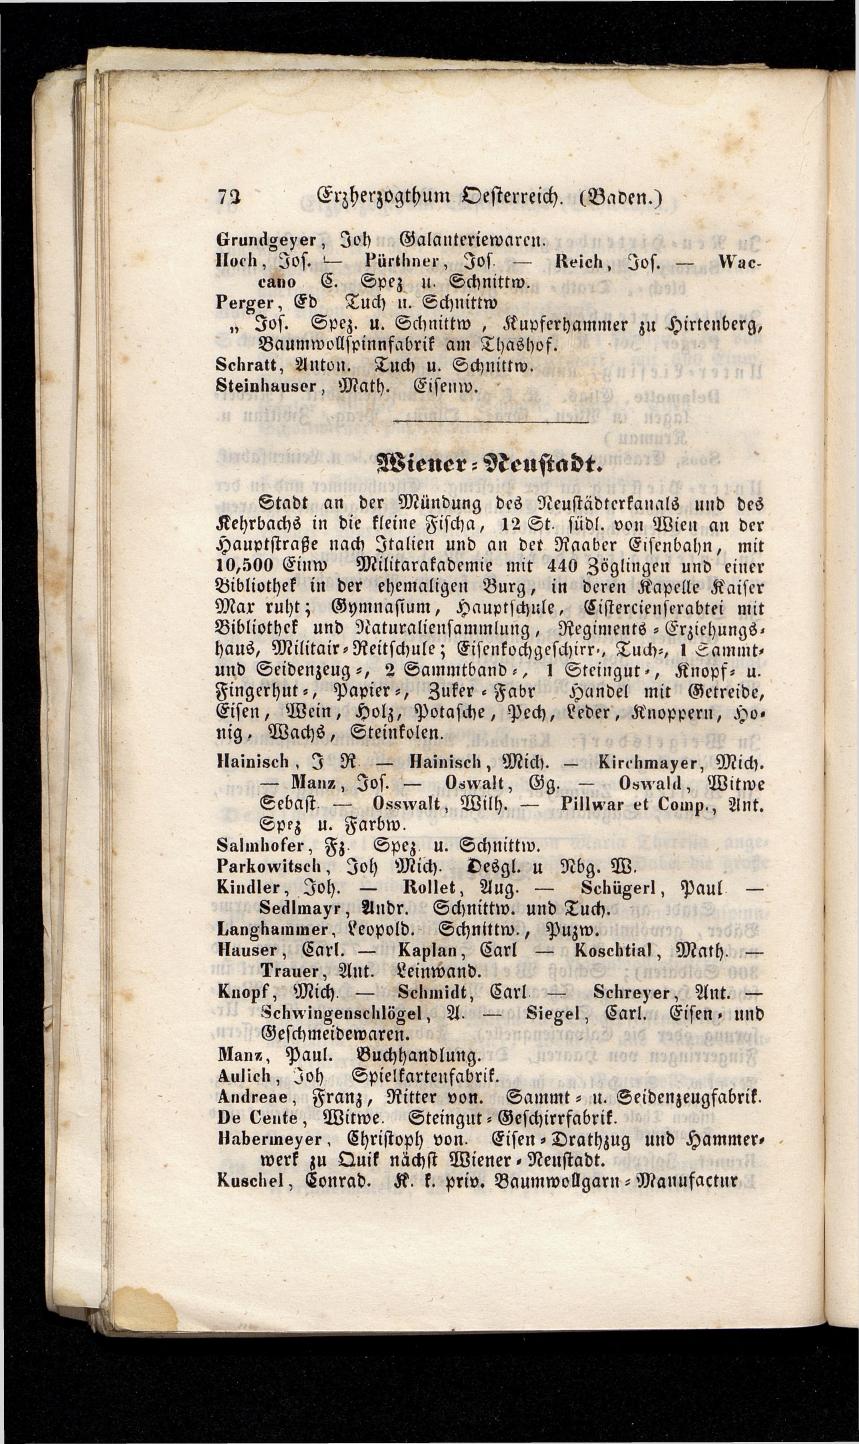 Grosses Adressbuch der Kaufleute. No. 13. Oesterreich ober u. unter der Enns 1844 - Seite 76